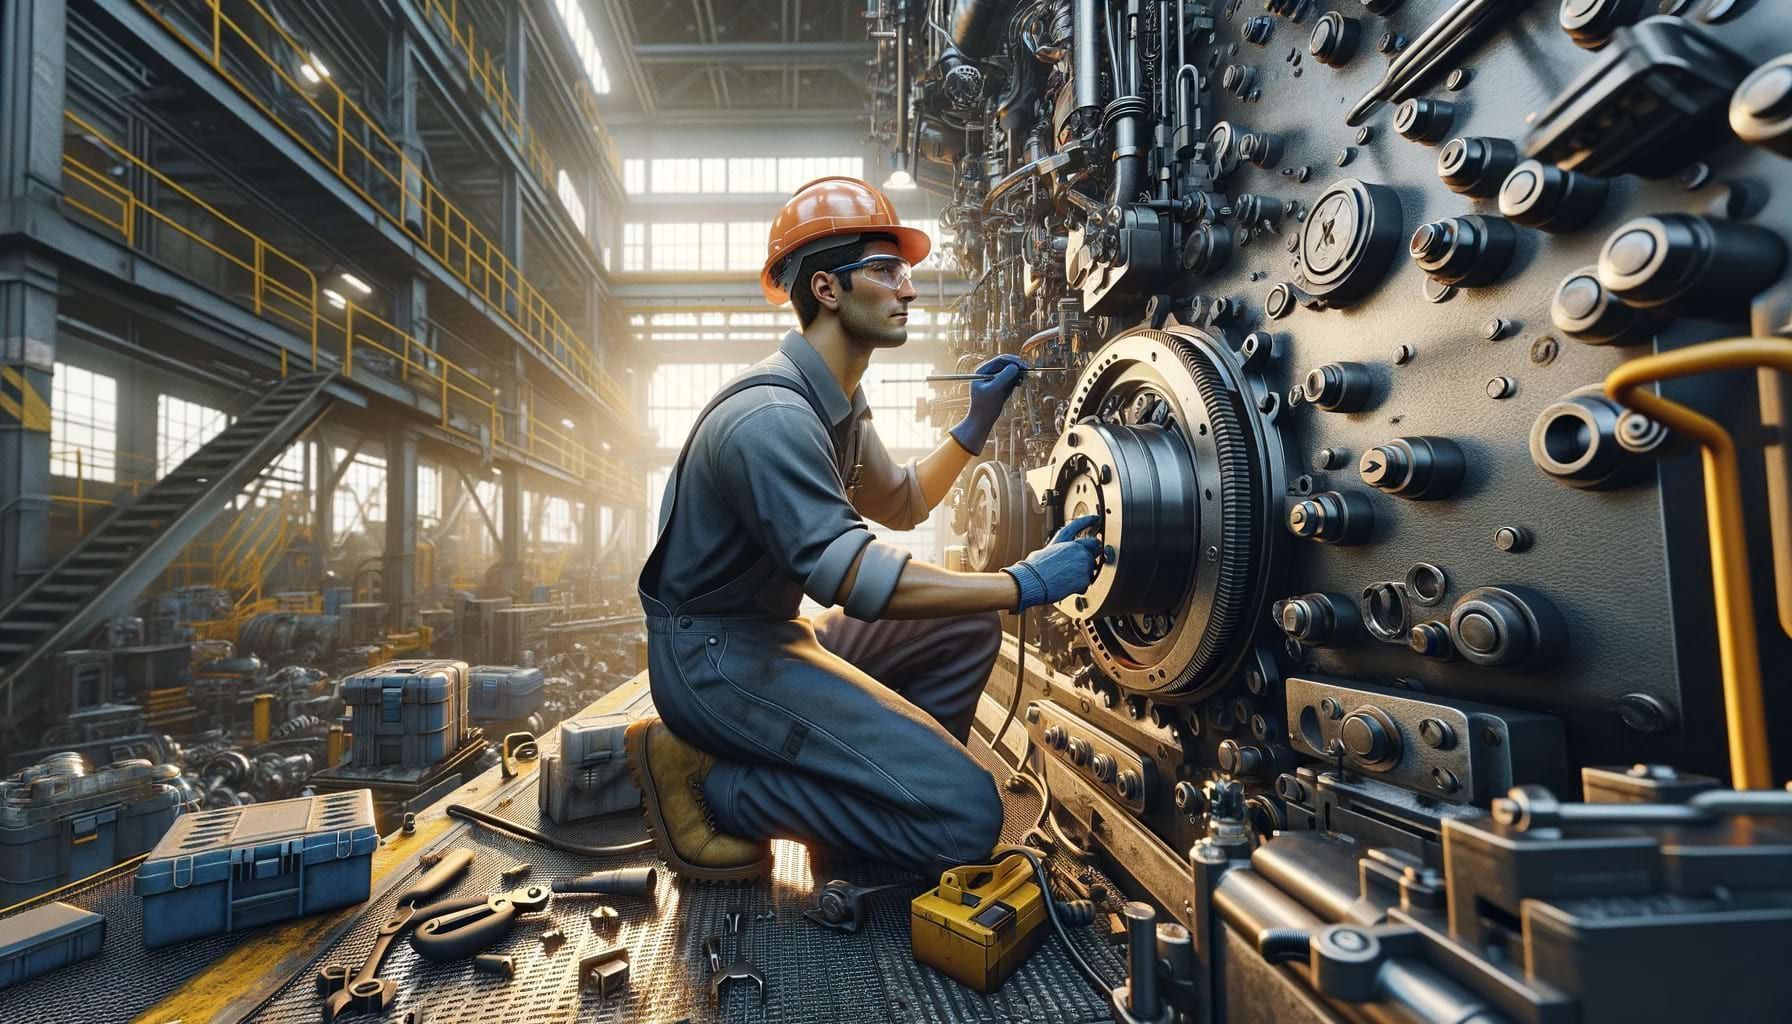 Mecânico industrial trabalhando com precisão em maquinário pesado, ilustrando habilidade e profissionalismo no ambiente industrial.